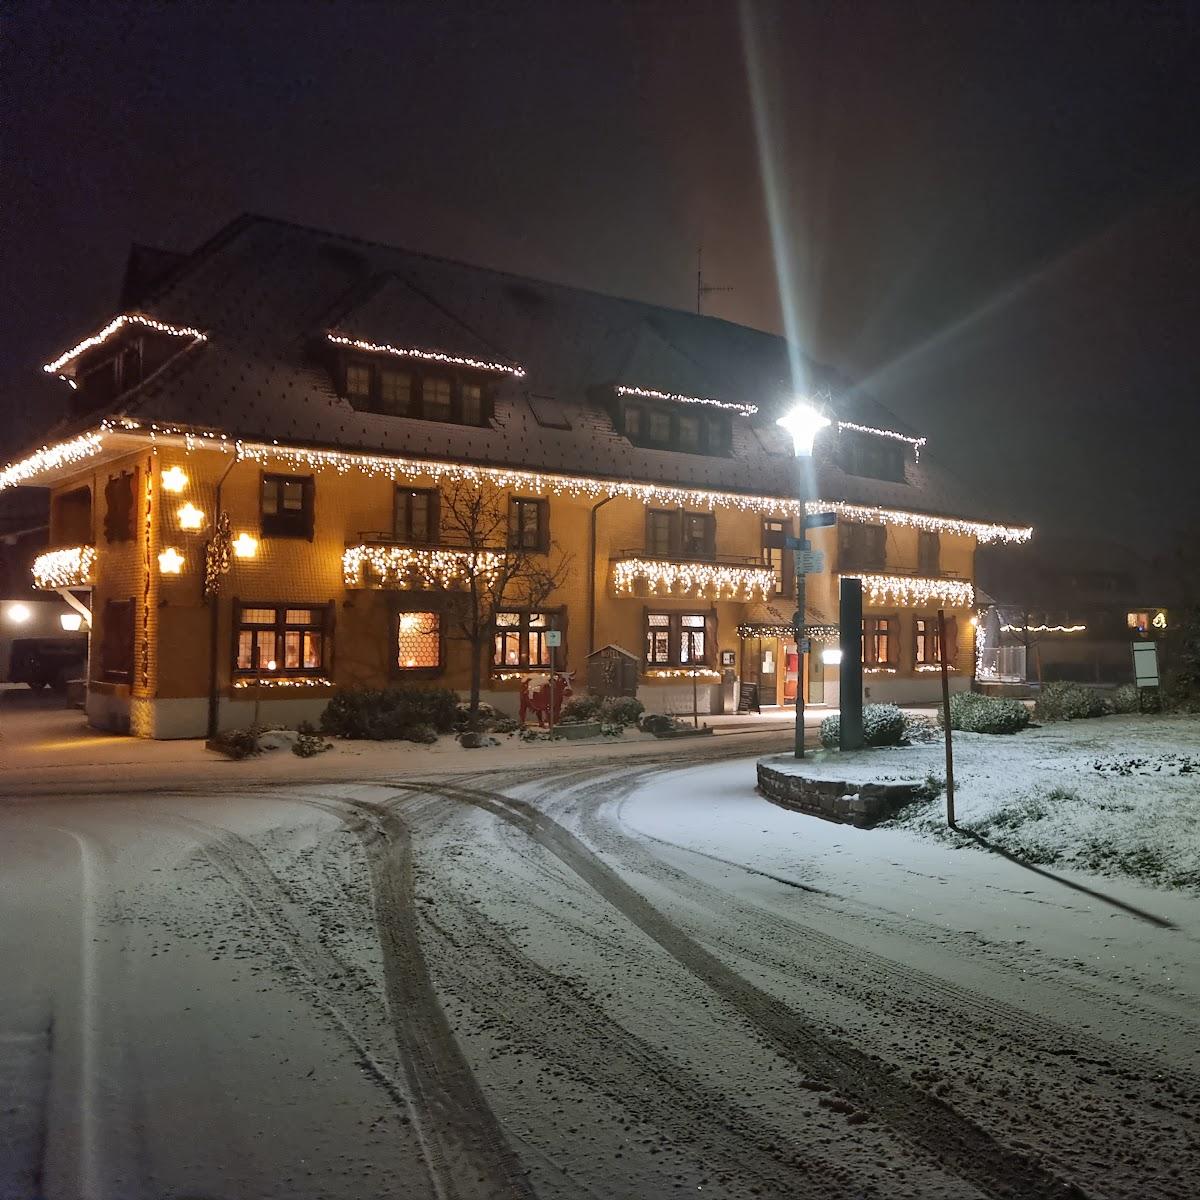 Restaurant "Bio- und Wellnesshotel Alpenblick" in Höchenschwand